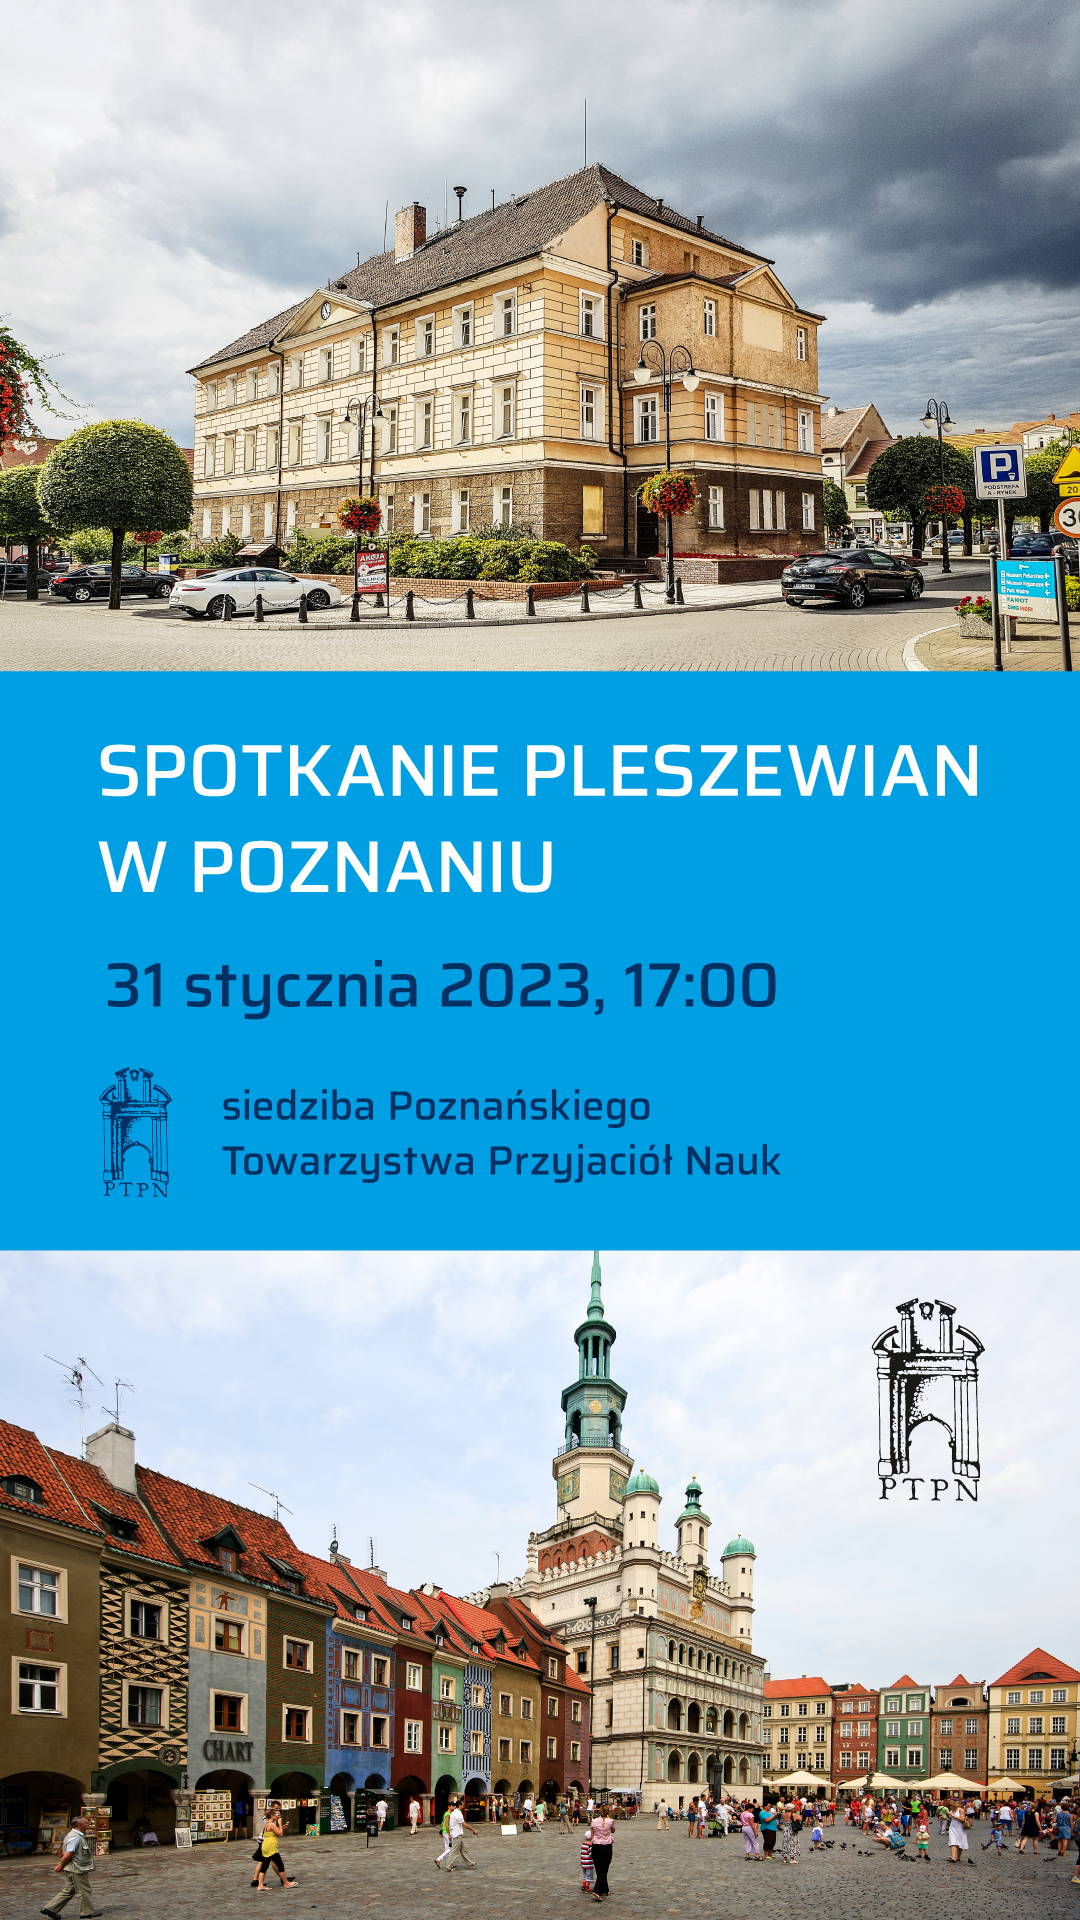 Plakat Spotkania Pleszewian w Poznaniu odbywającego się w siedzibie Poznańskiego Towarzystwa Przyjaciół Nauk w Poznaniu 31 stycznia 2023 roku o godzinie 17:00